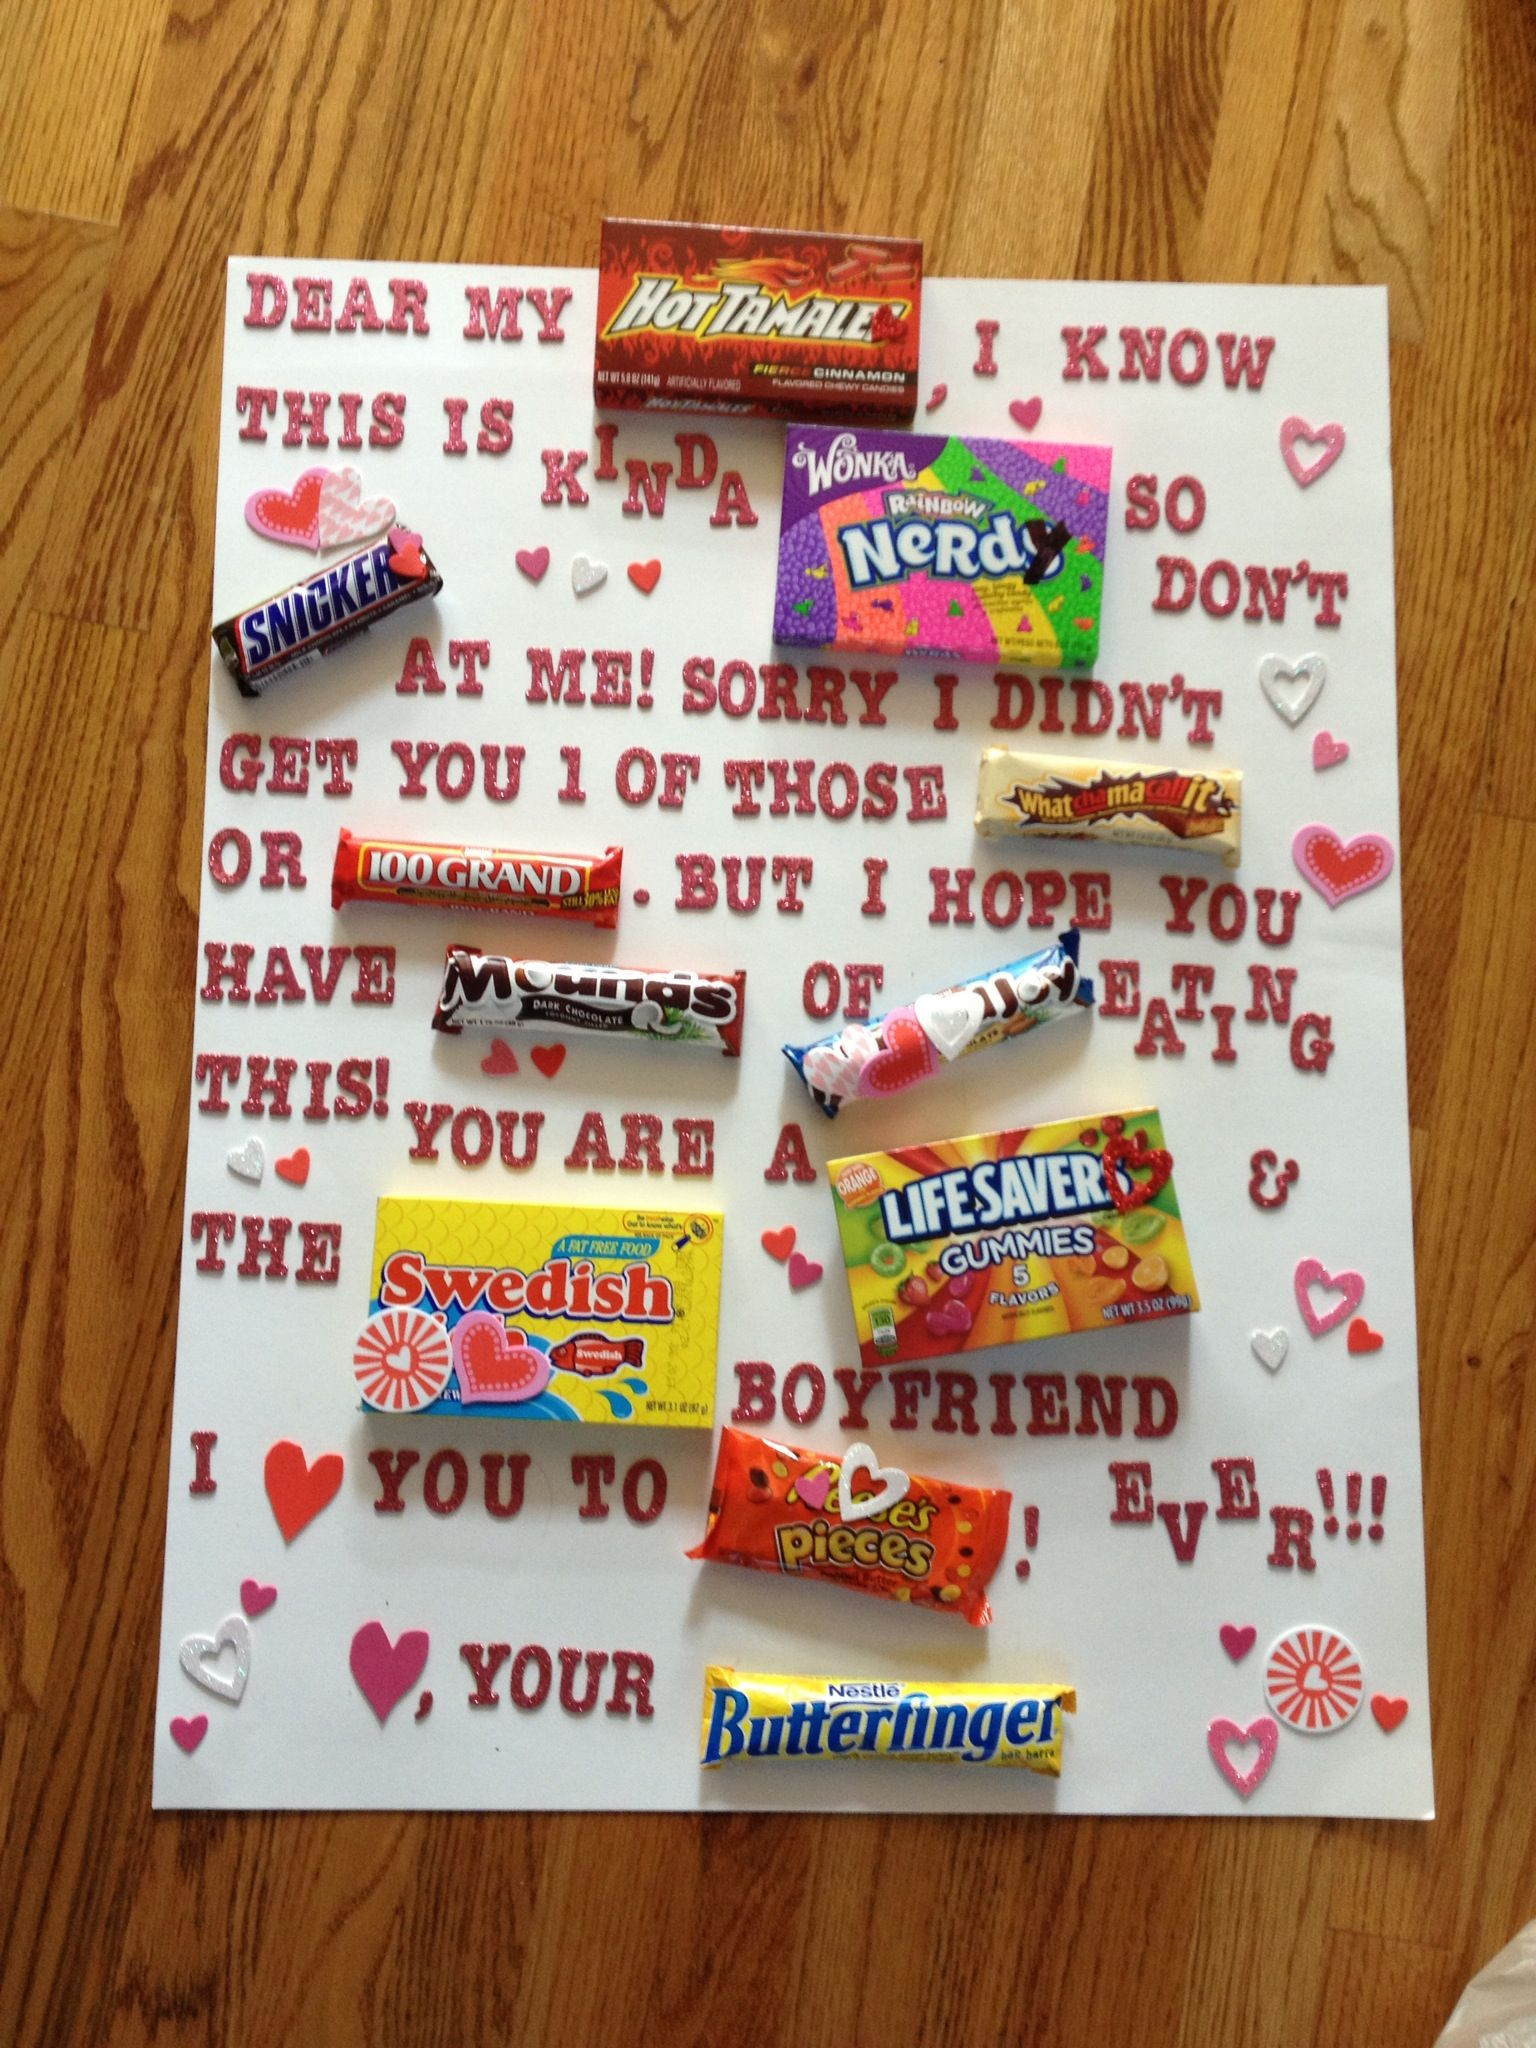 Valentines Day Ideas Gift Boyfriend
 What I made my boyfriend for Valentines day